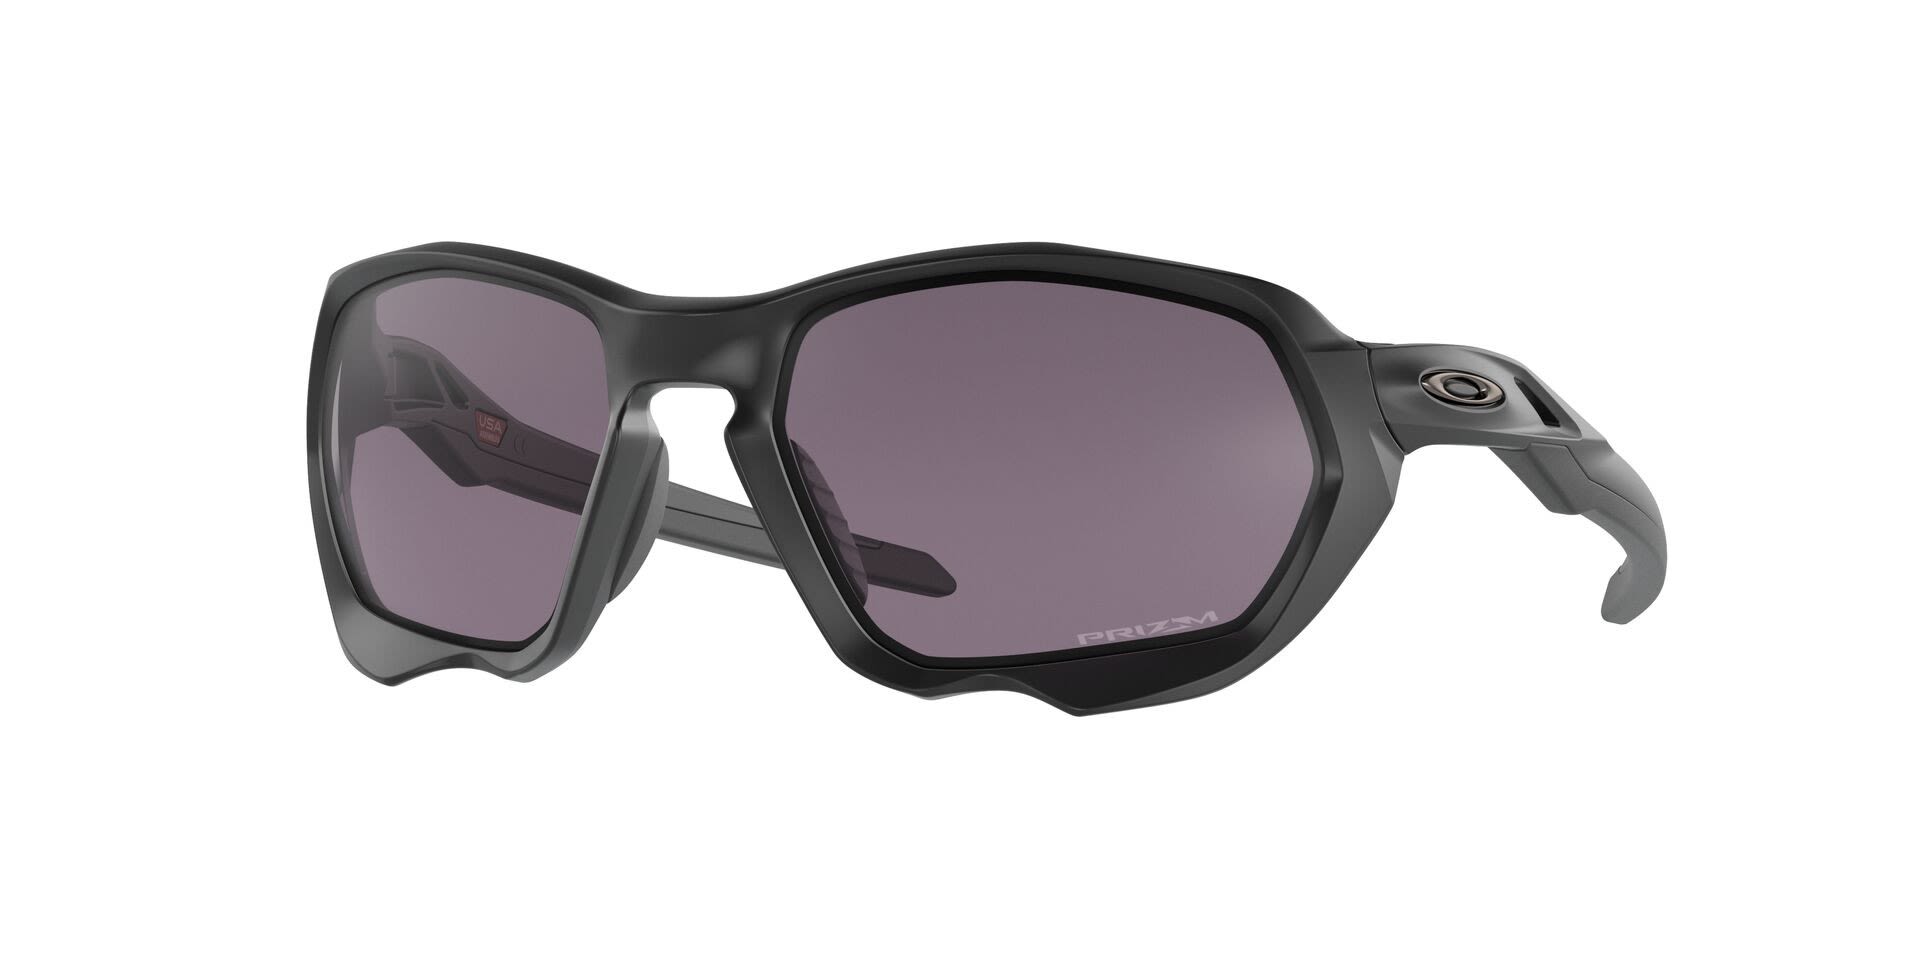 Oakley Plazma Matte Prizm Schwarz- Fahrradbrillen- Grsse One Size - Farbe Matte Black - Prizm Grey